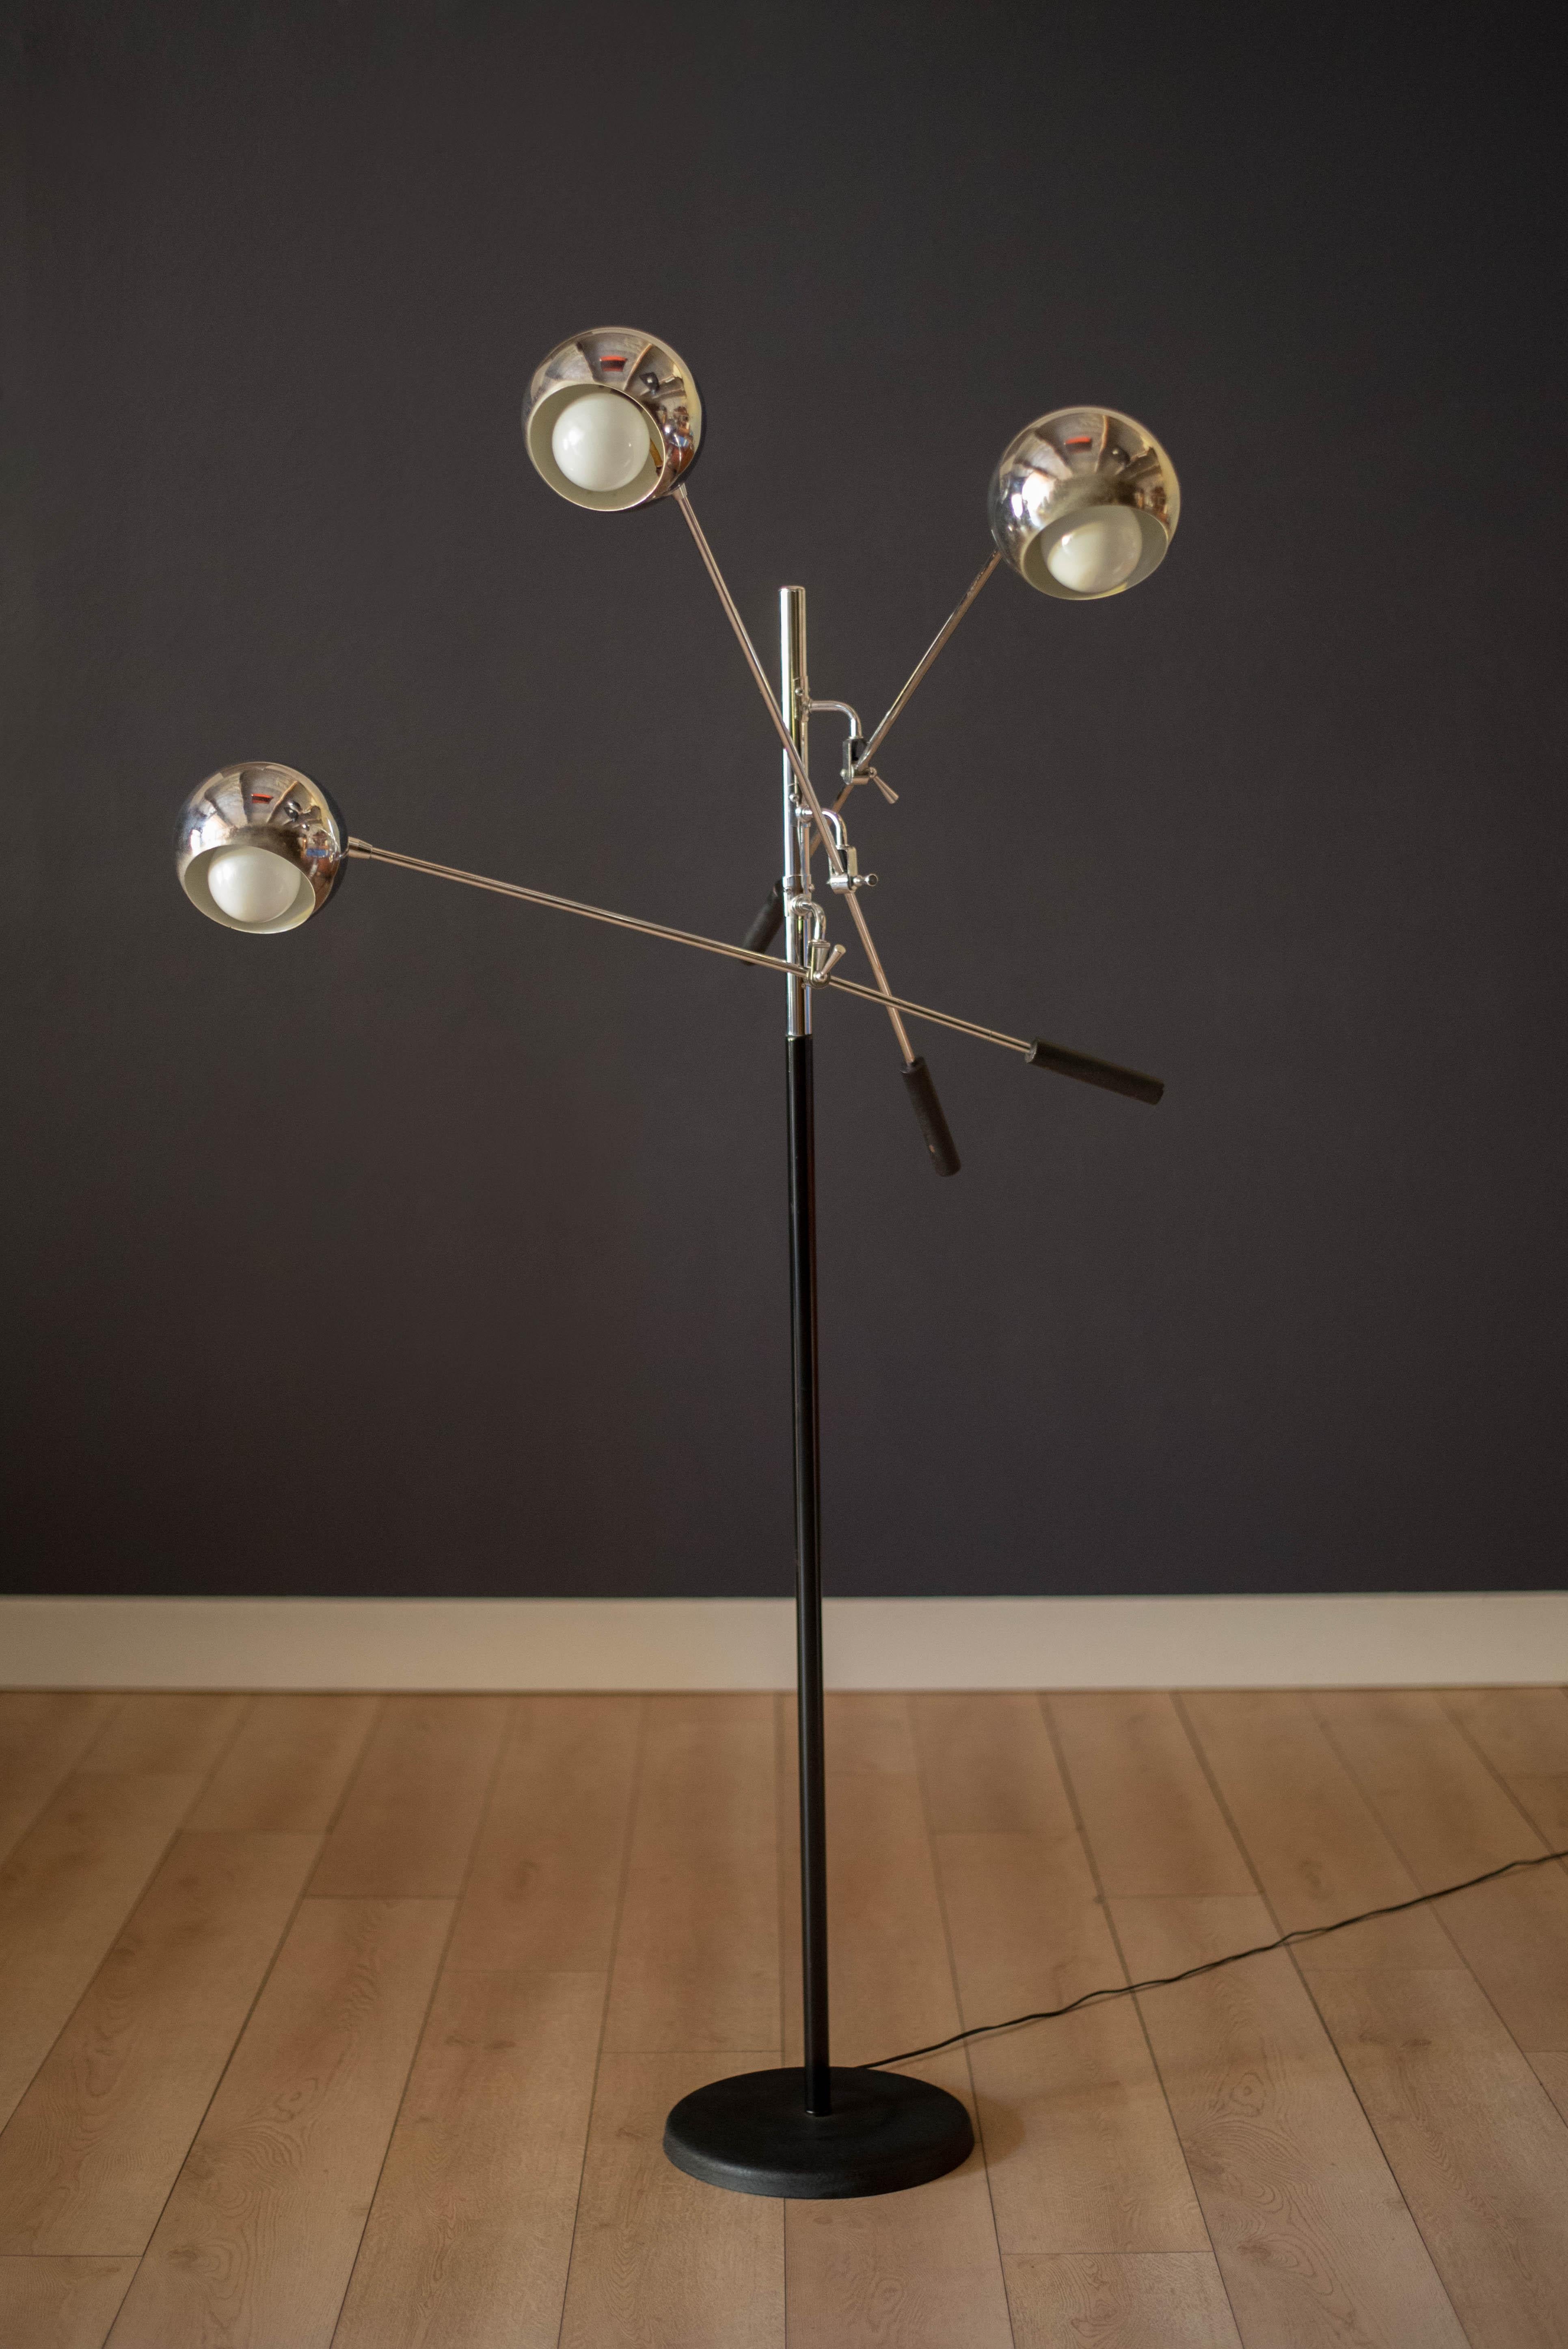 Vintage Triennale Stehleuchte entworfen von Robert Sonneman um 1970. Diese vielseitige Leuchte verfügt über drei verstellbare, verchromte Lichtköpfe, die sich an ausbalancierten Hebelarmen drehen. Glühbirnen sind nicht enthalten. 

Maße: Hebelarm: